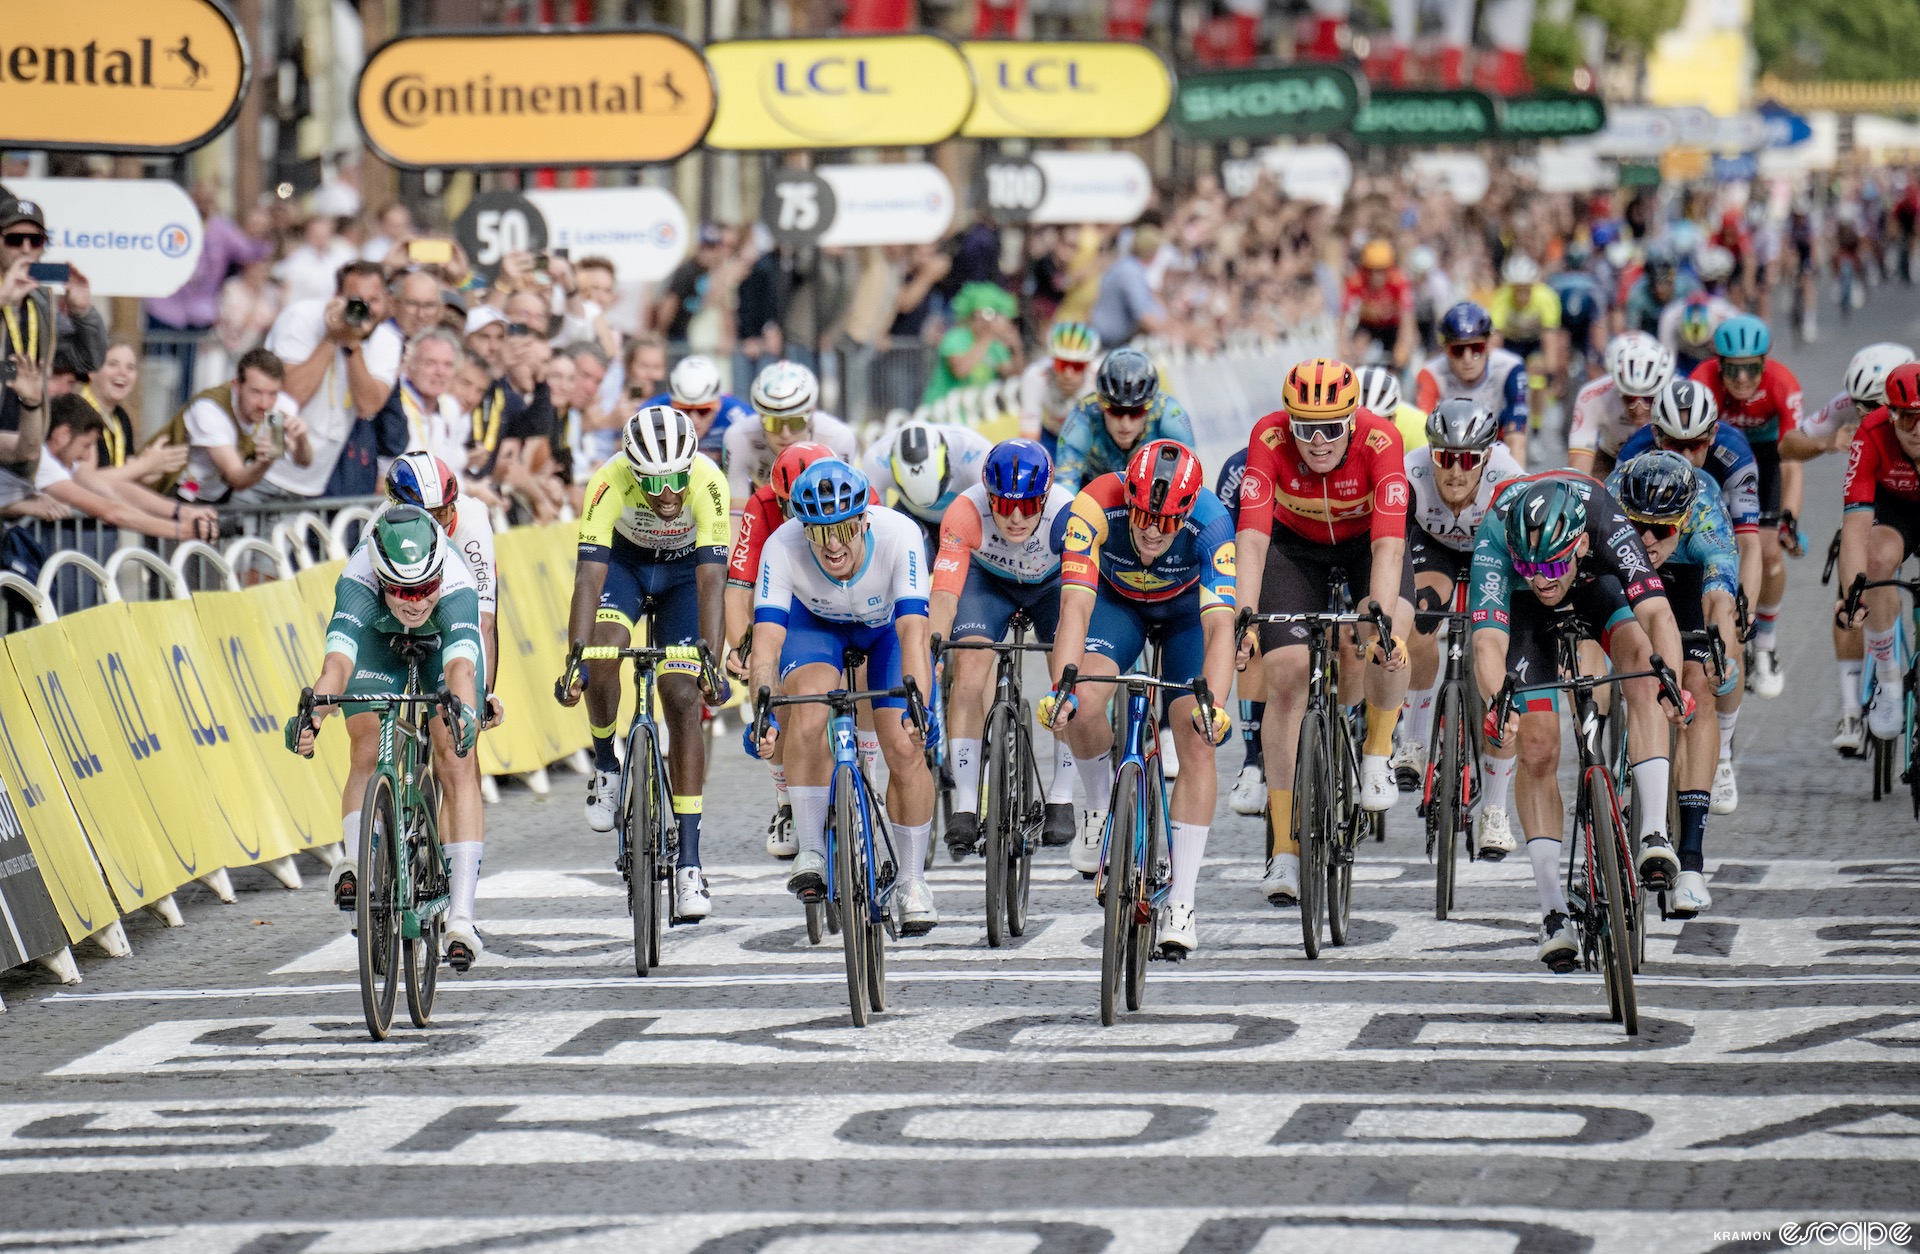 Jordi Meeus wins stage 21 of the Tour de France.